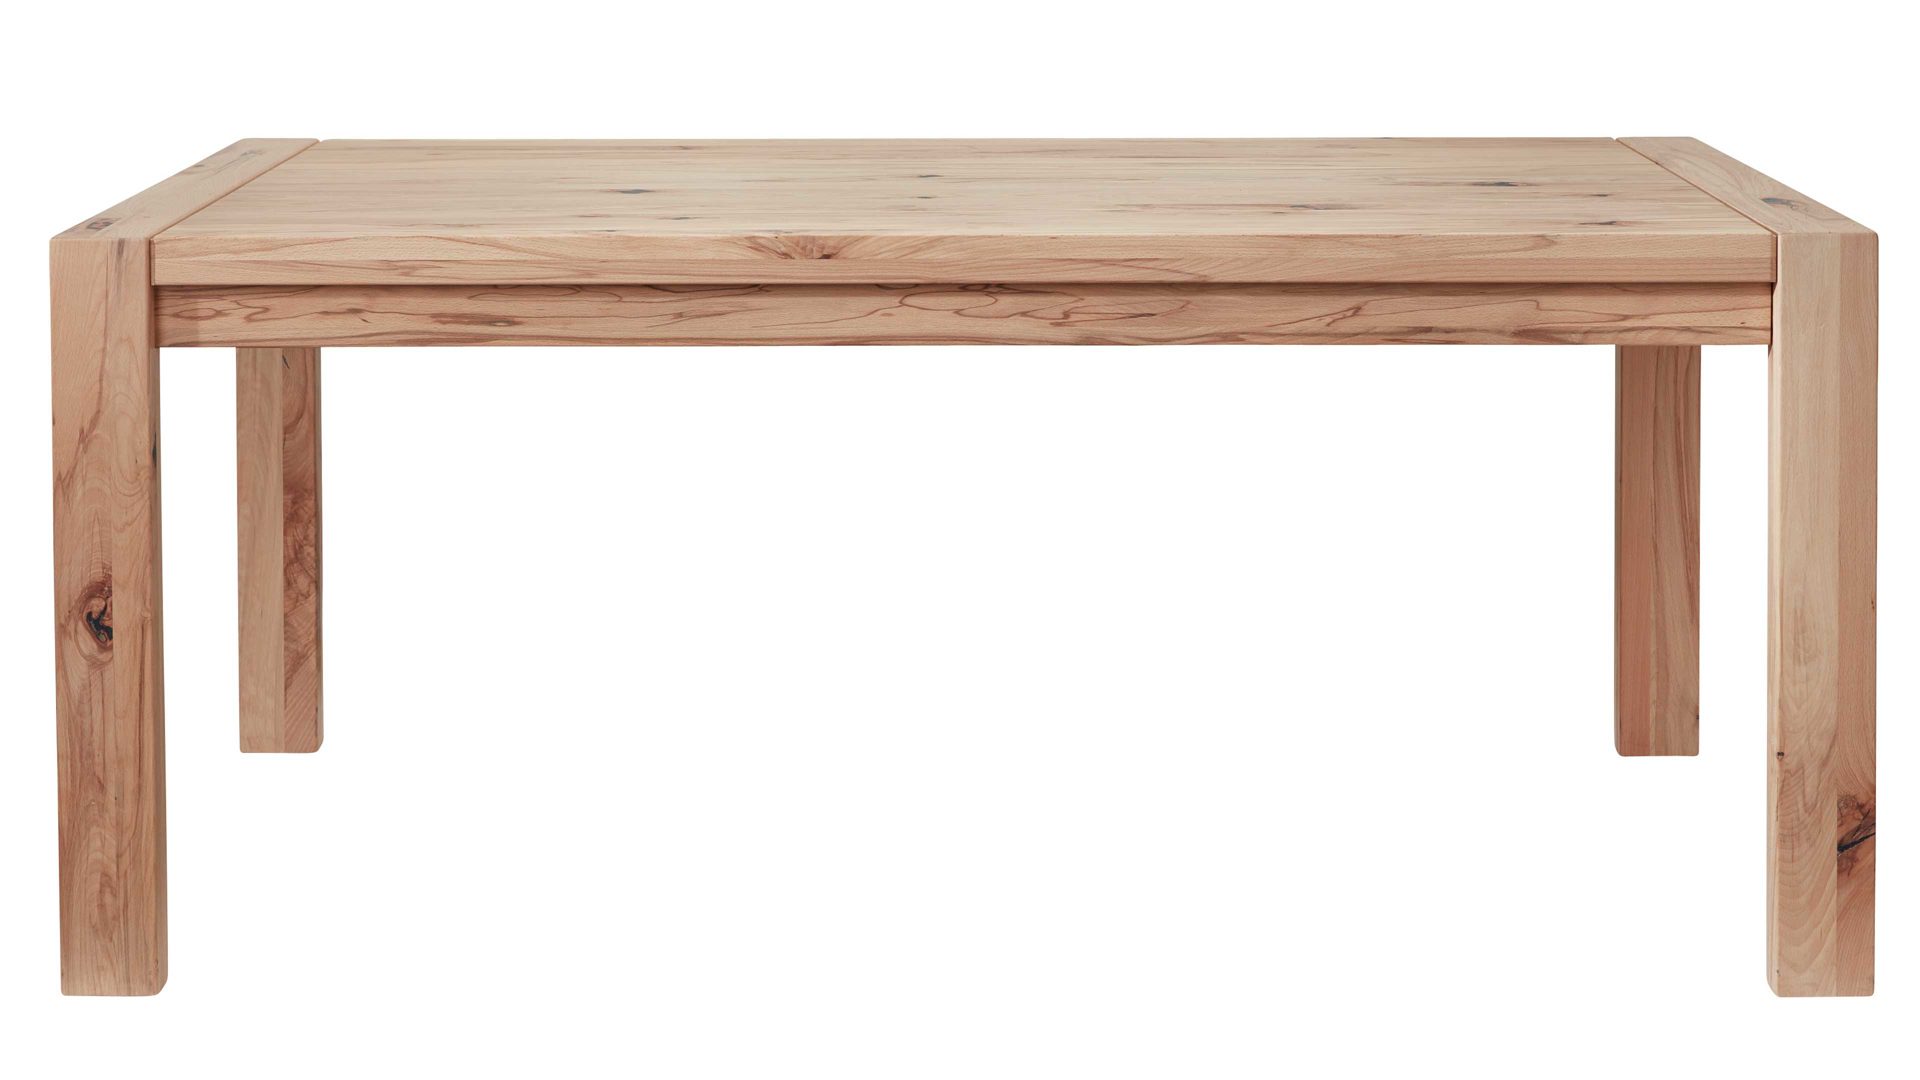 Auszugtisch Interliving aus Holz in Holzfarben Interliving Wohnzimmer Serie 2005 – Auszugtisch 117 583 Asteiche Bianco – ca. 220-320 x 100 cm